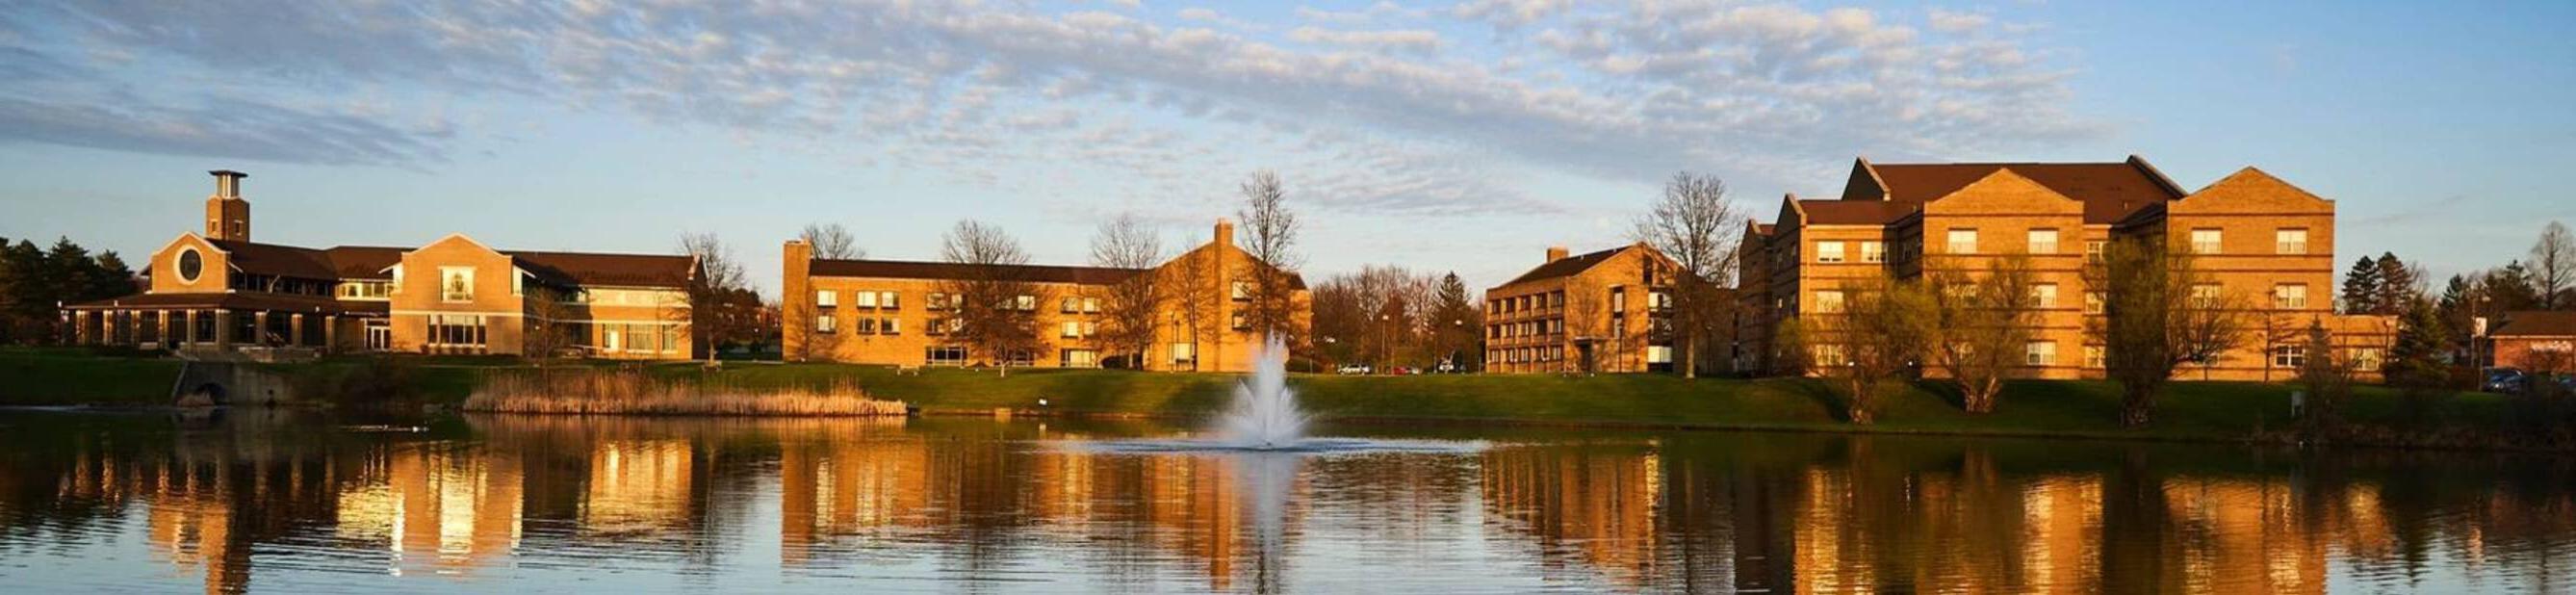 Ursuline college campus at dusk